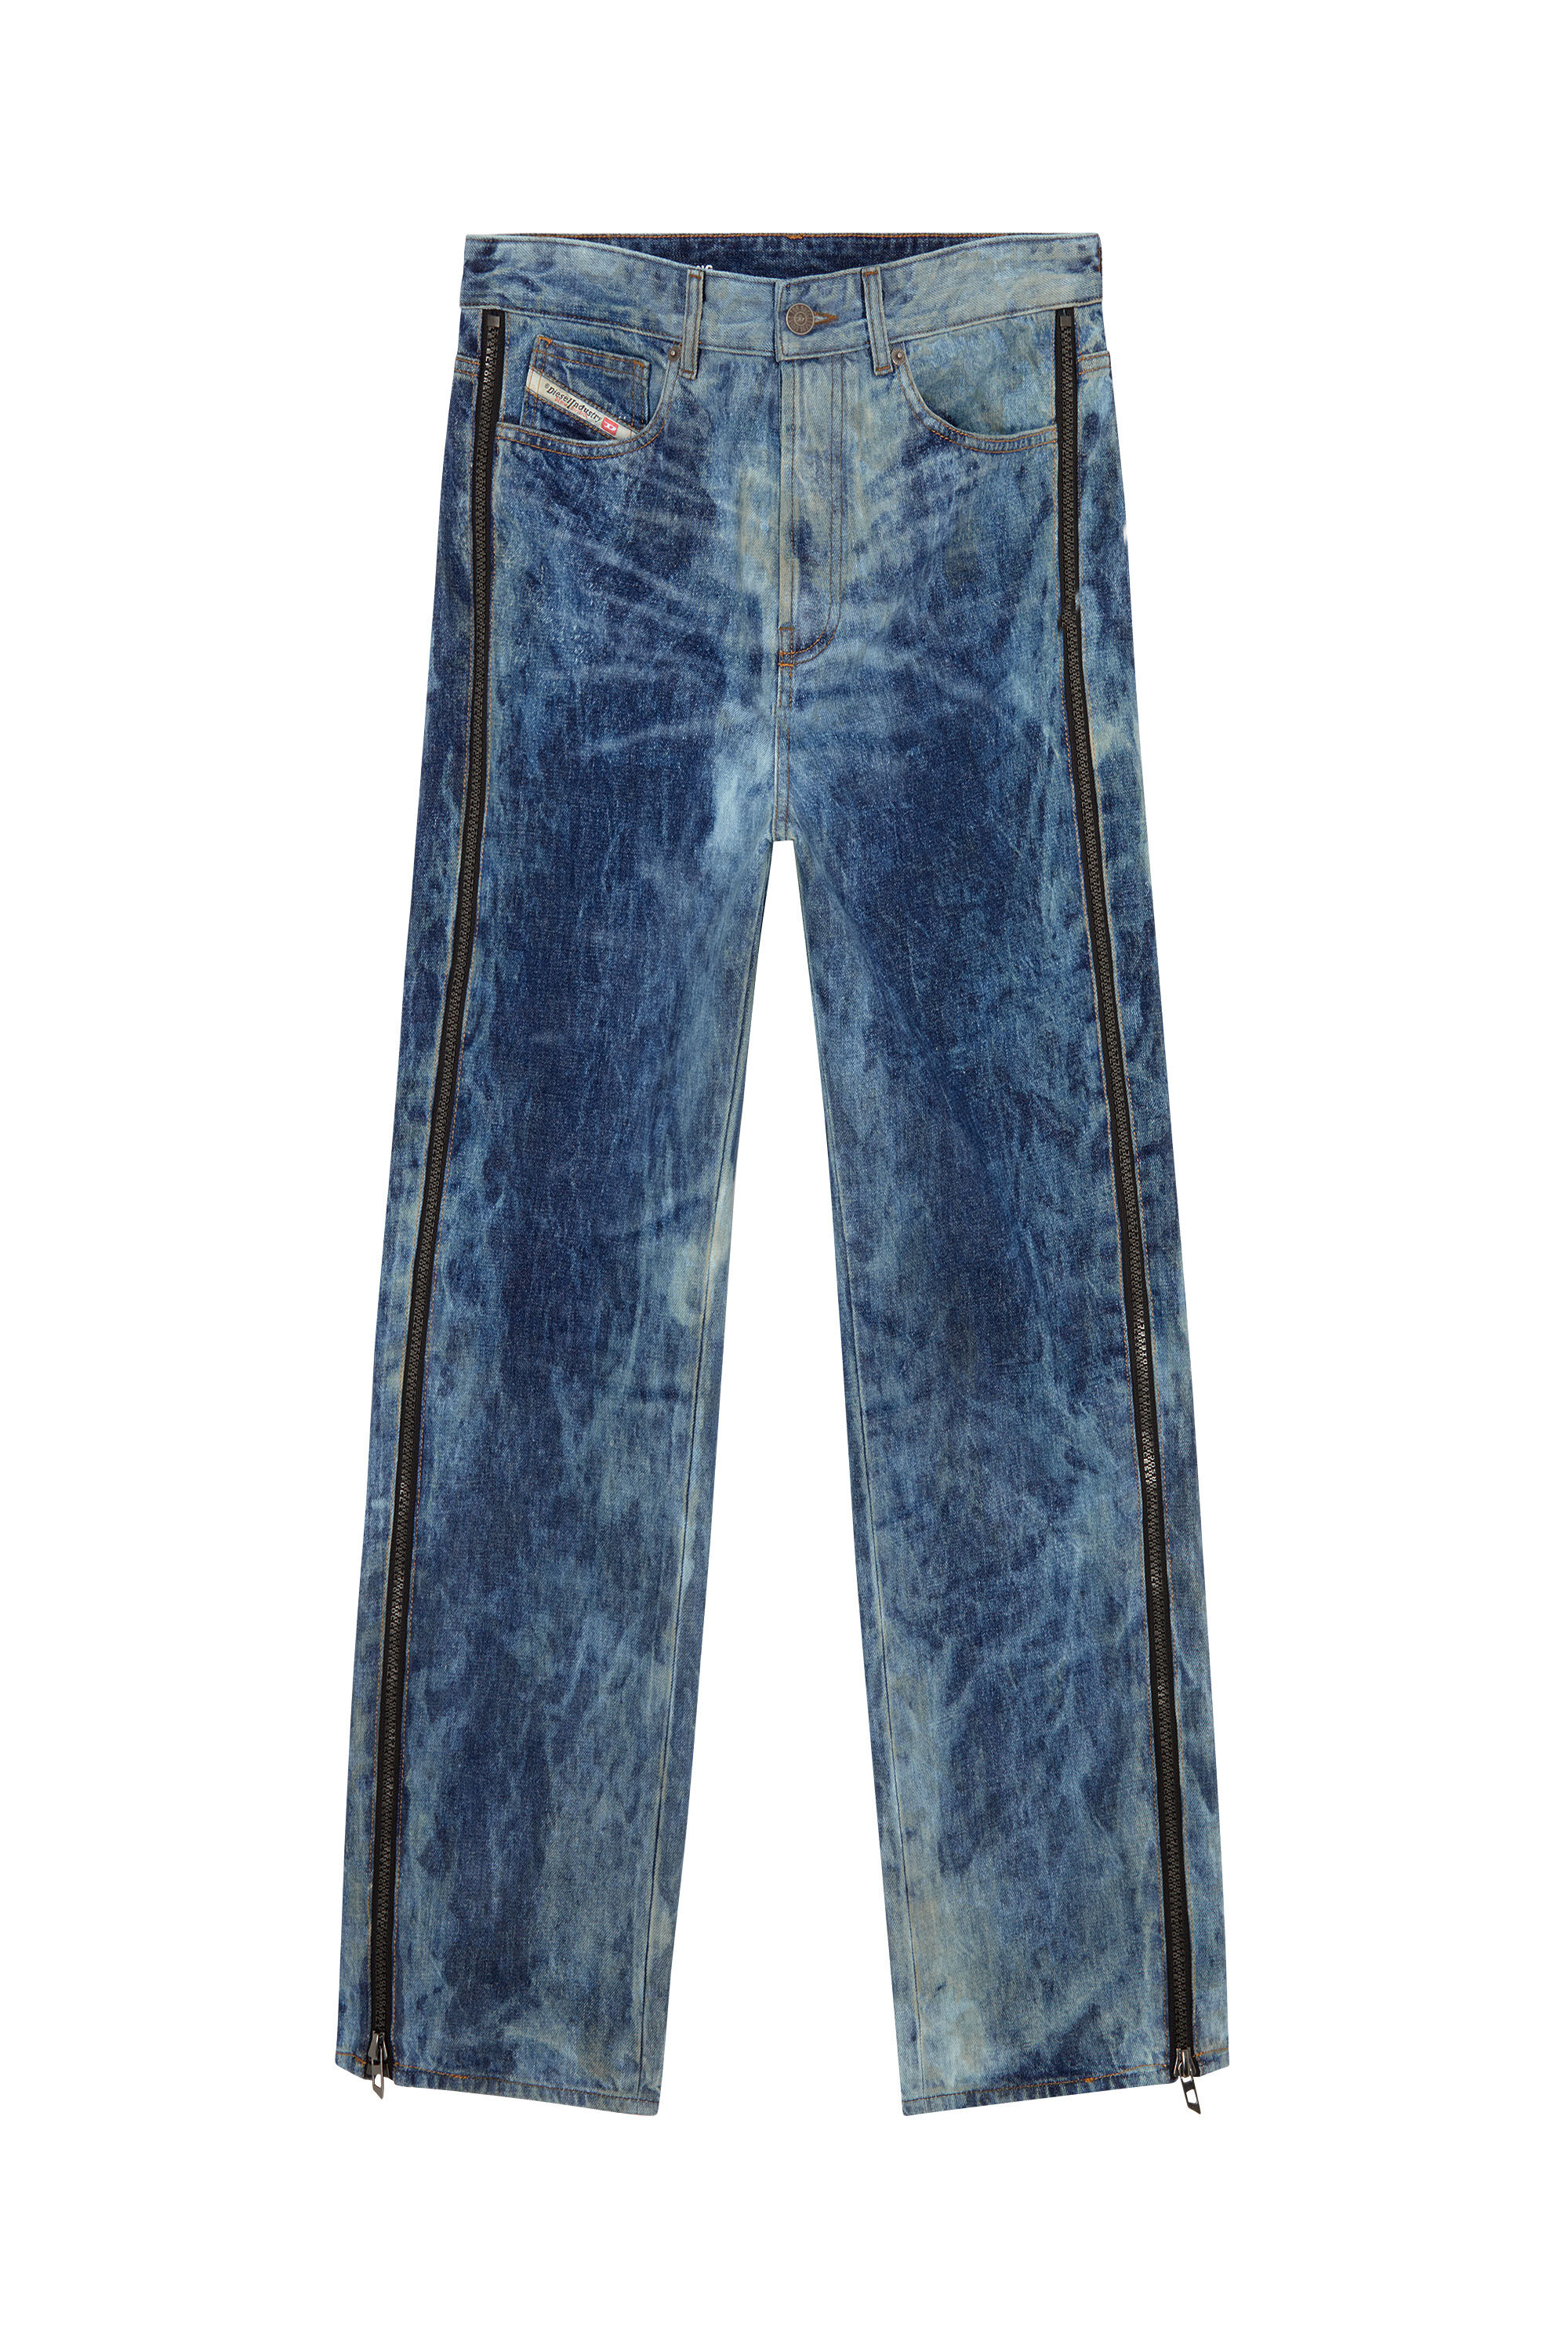 Men's Oversized Straight Jeans | Medium blue | Diesel D-Rise